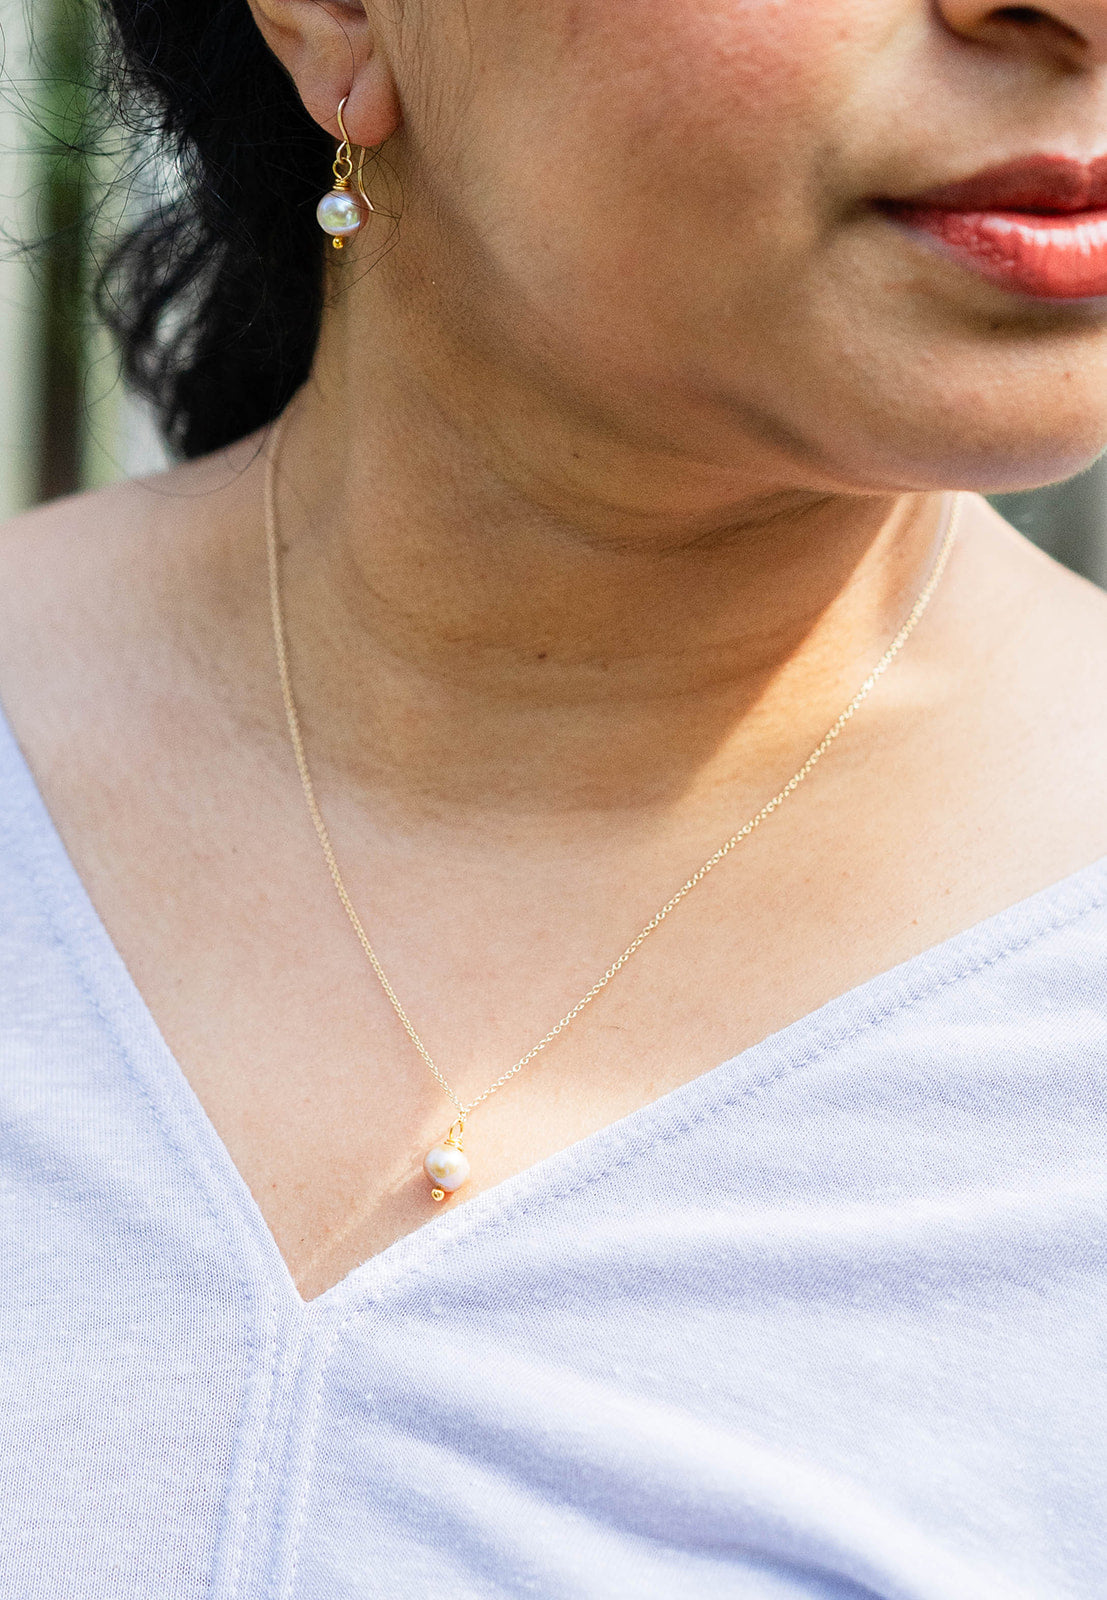 Rose Quartz Necklace – Bella Vita Jewelry